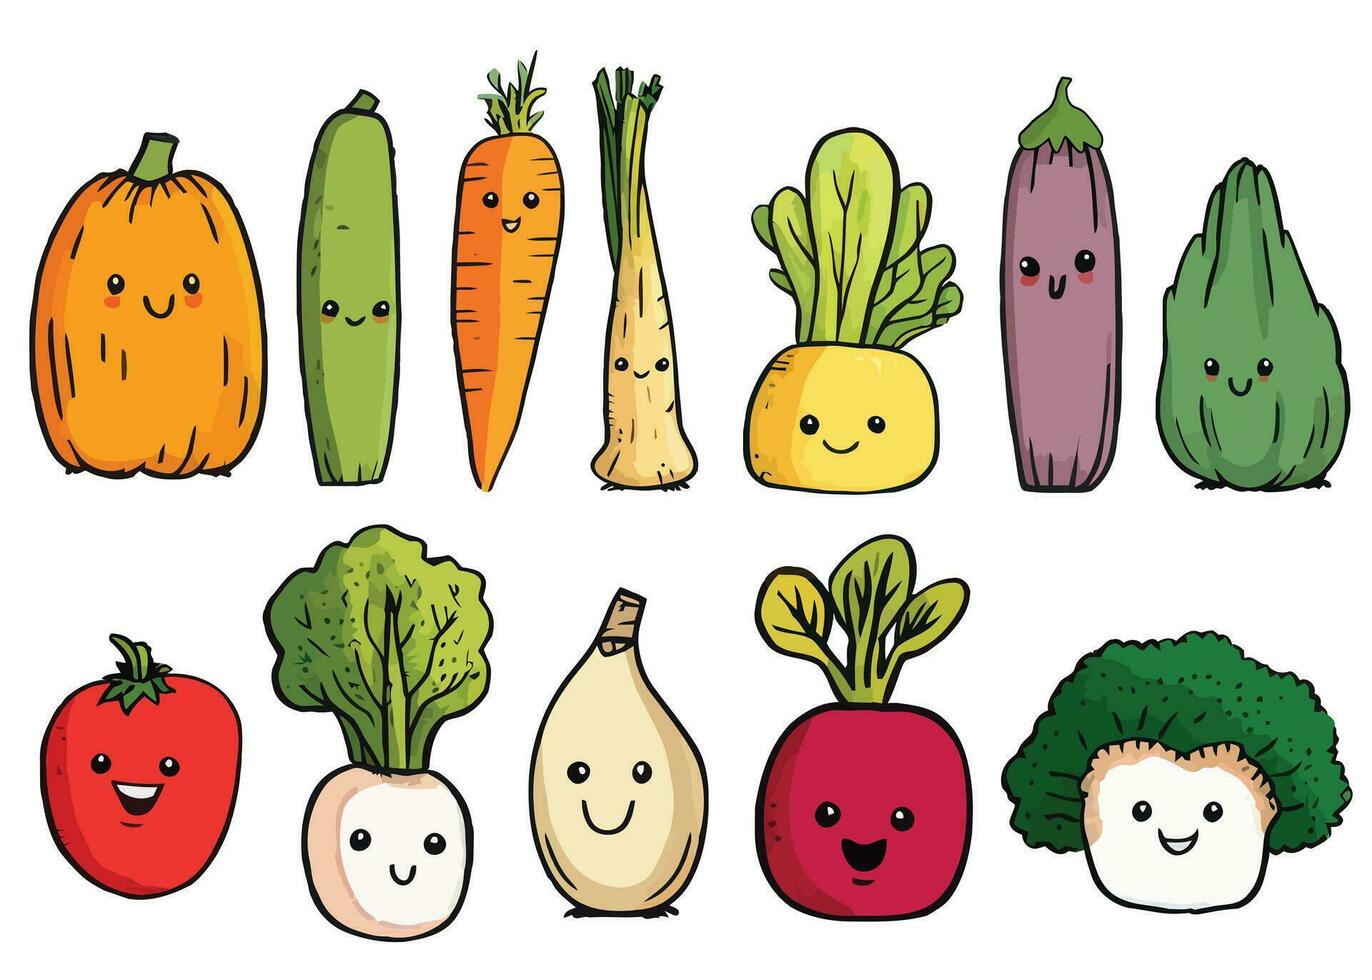 süß Gemüse einstellen Vektor, Gemüse mit Gesicht, Karikatur Hand gezeichnet Gemüse Sammlung. Kinder komisch Illustration vektor